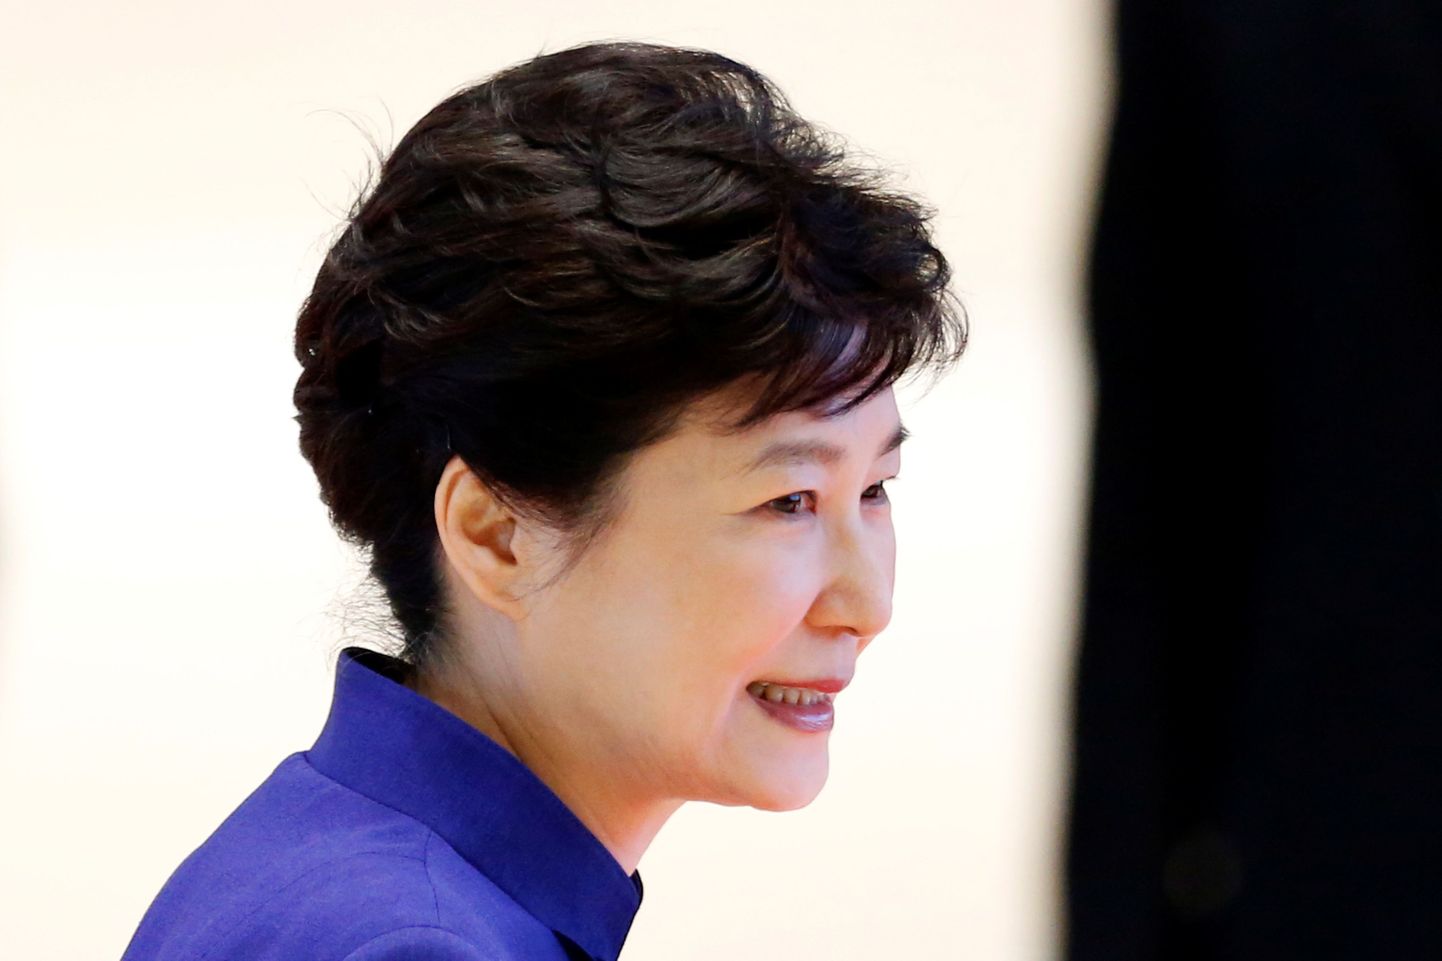 Park Geun-Hye.